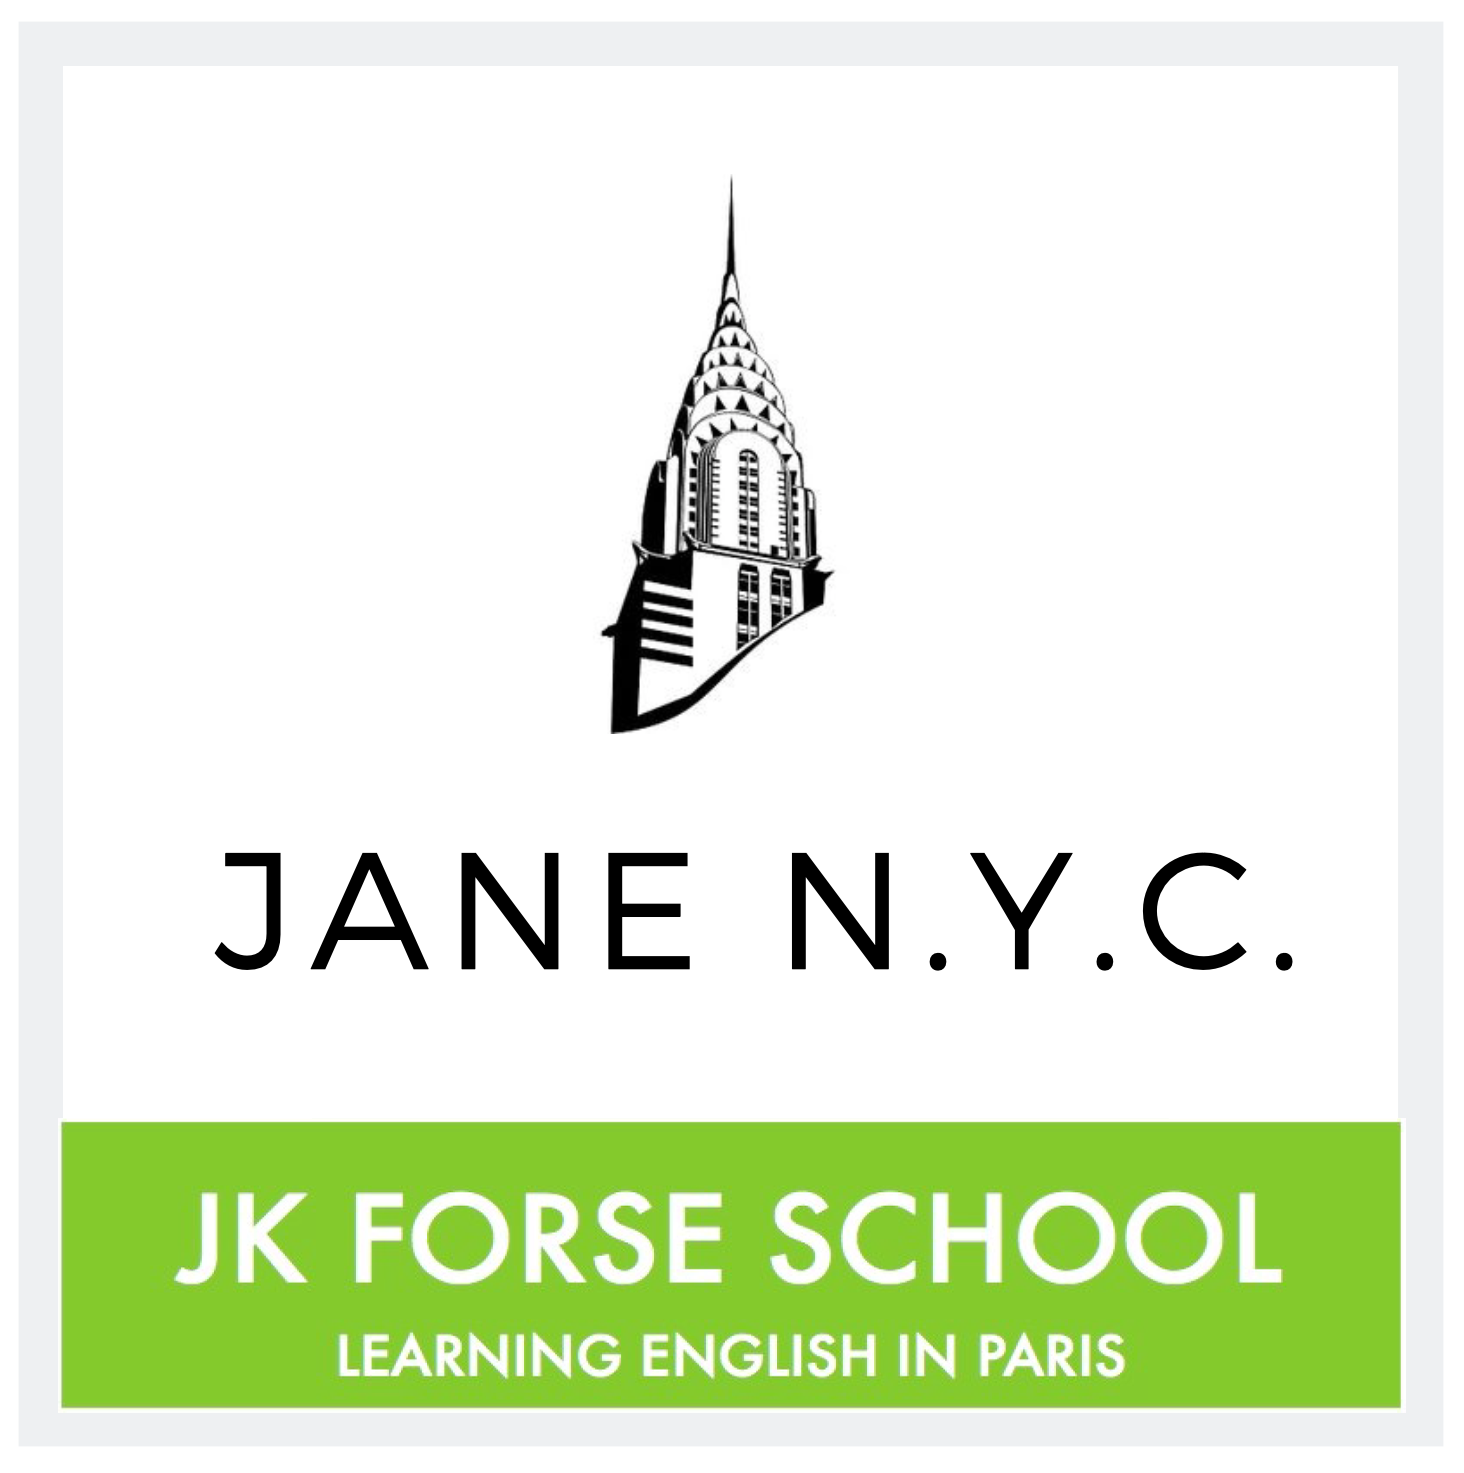 JK FORSE SCHOOL   JANE N.Y.C.